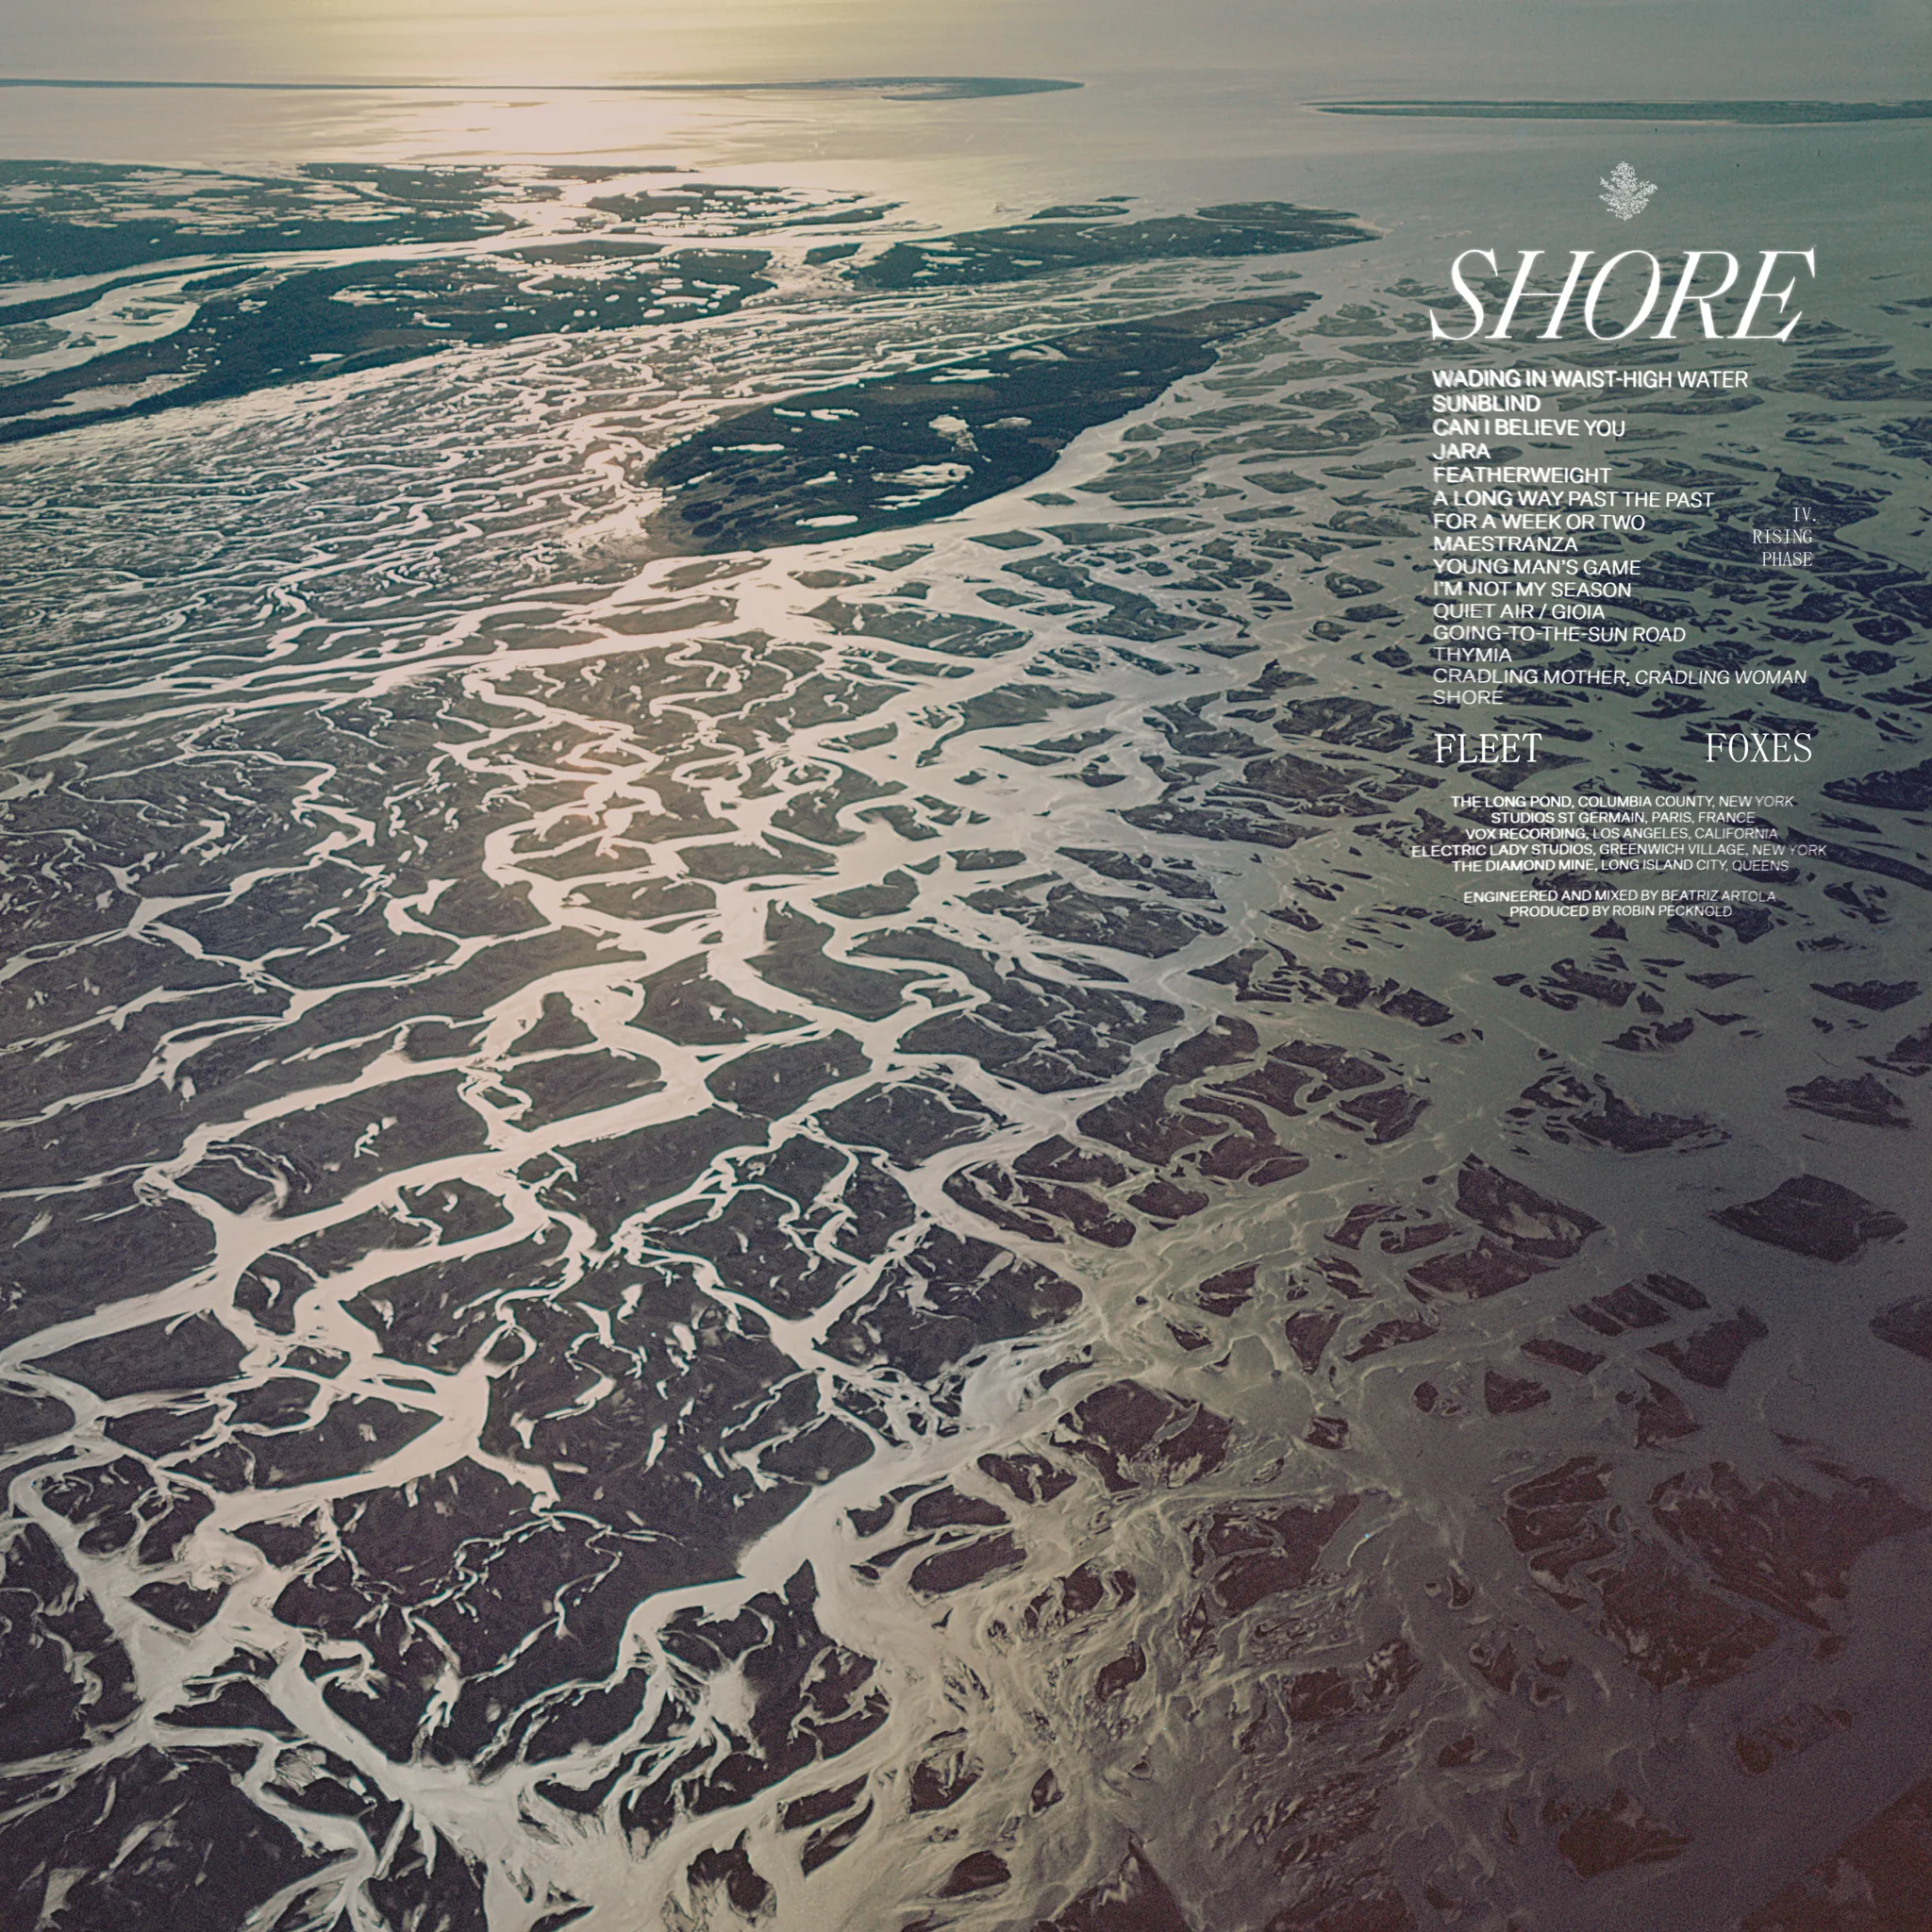 <strong>Fleet Foxes - Shore</strong> (Vinyl LP - black)